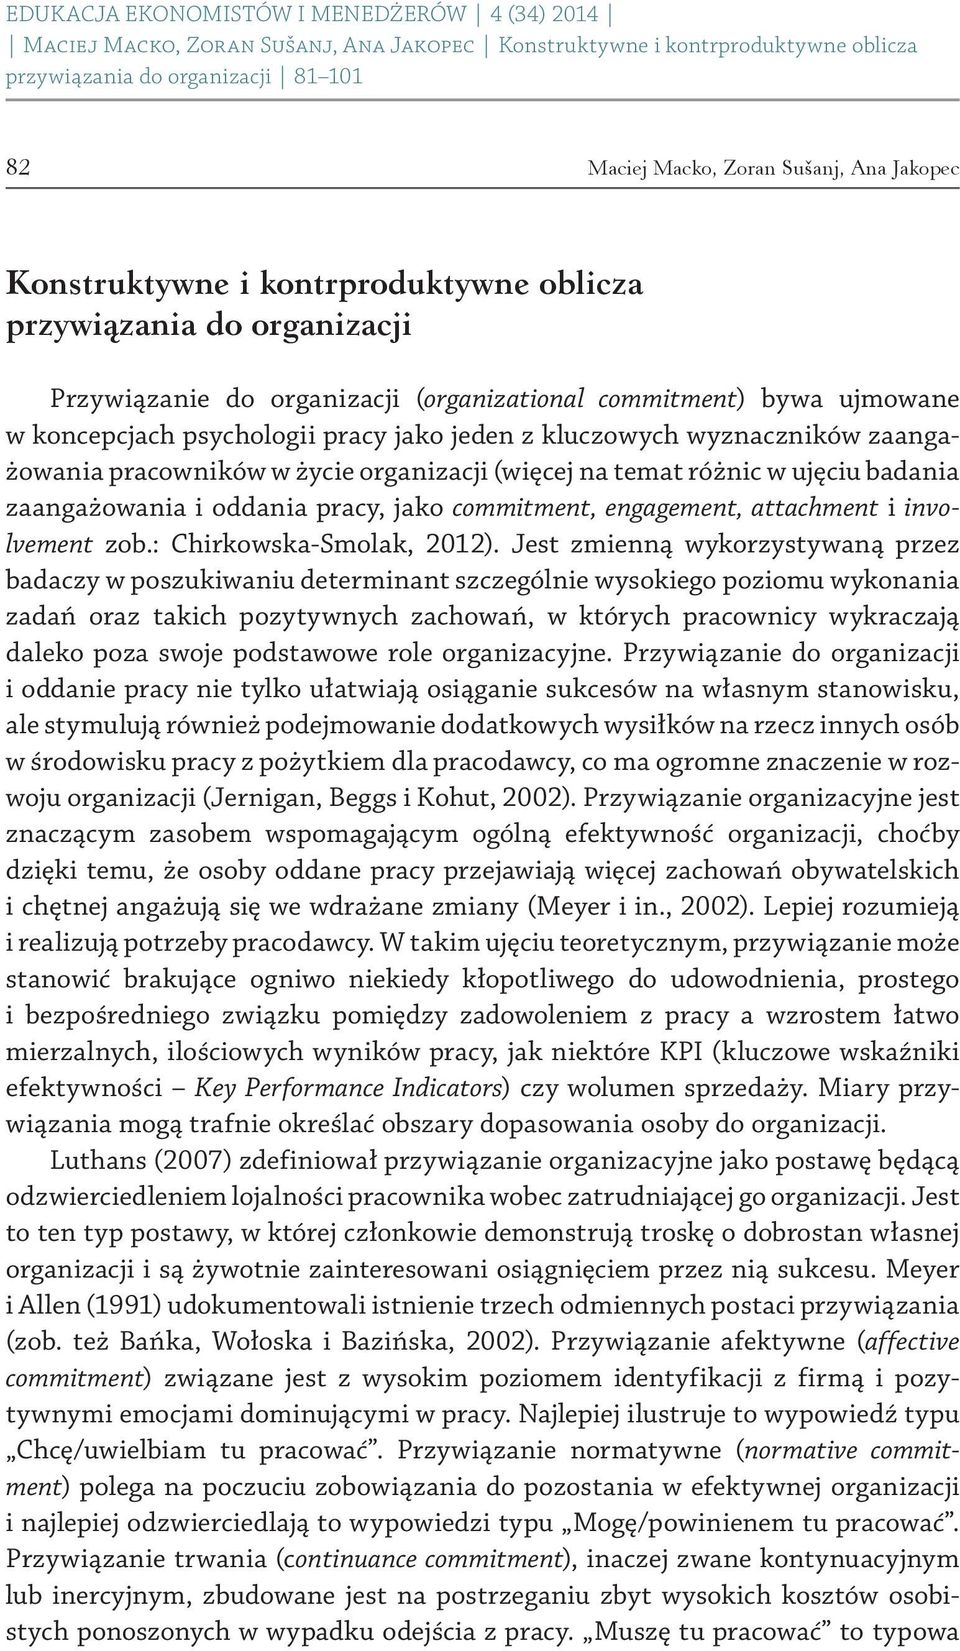 engagement, attachment i involvement zob.: Chirkowska Smolak, 2012).